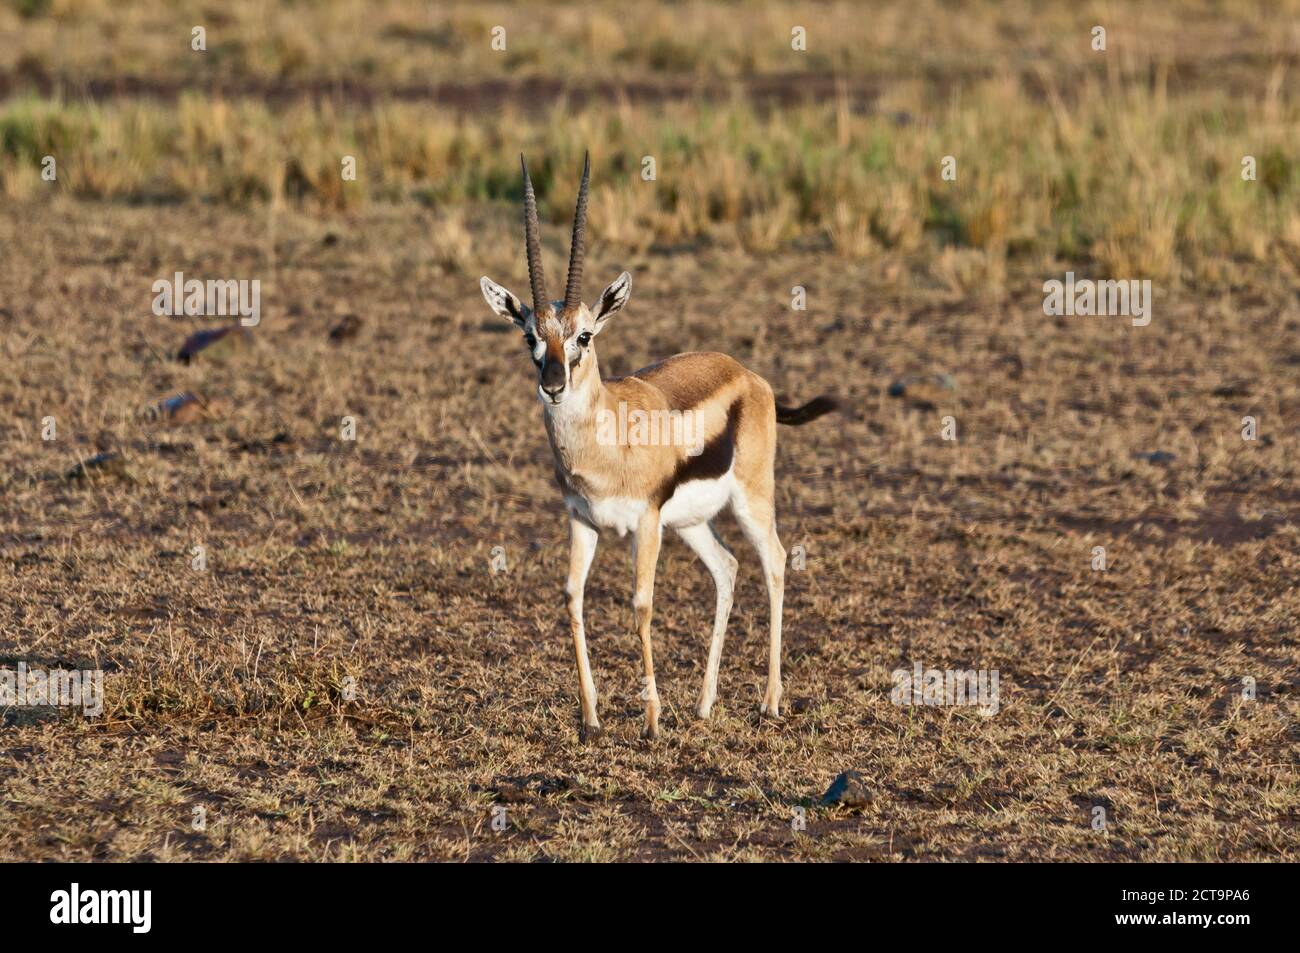 Afrique, Kenya, Masai Mara National Reserve, la Gazelle de Thomson (Eudorcas thomsoni) Banque D'Images